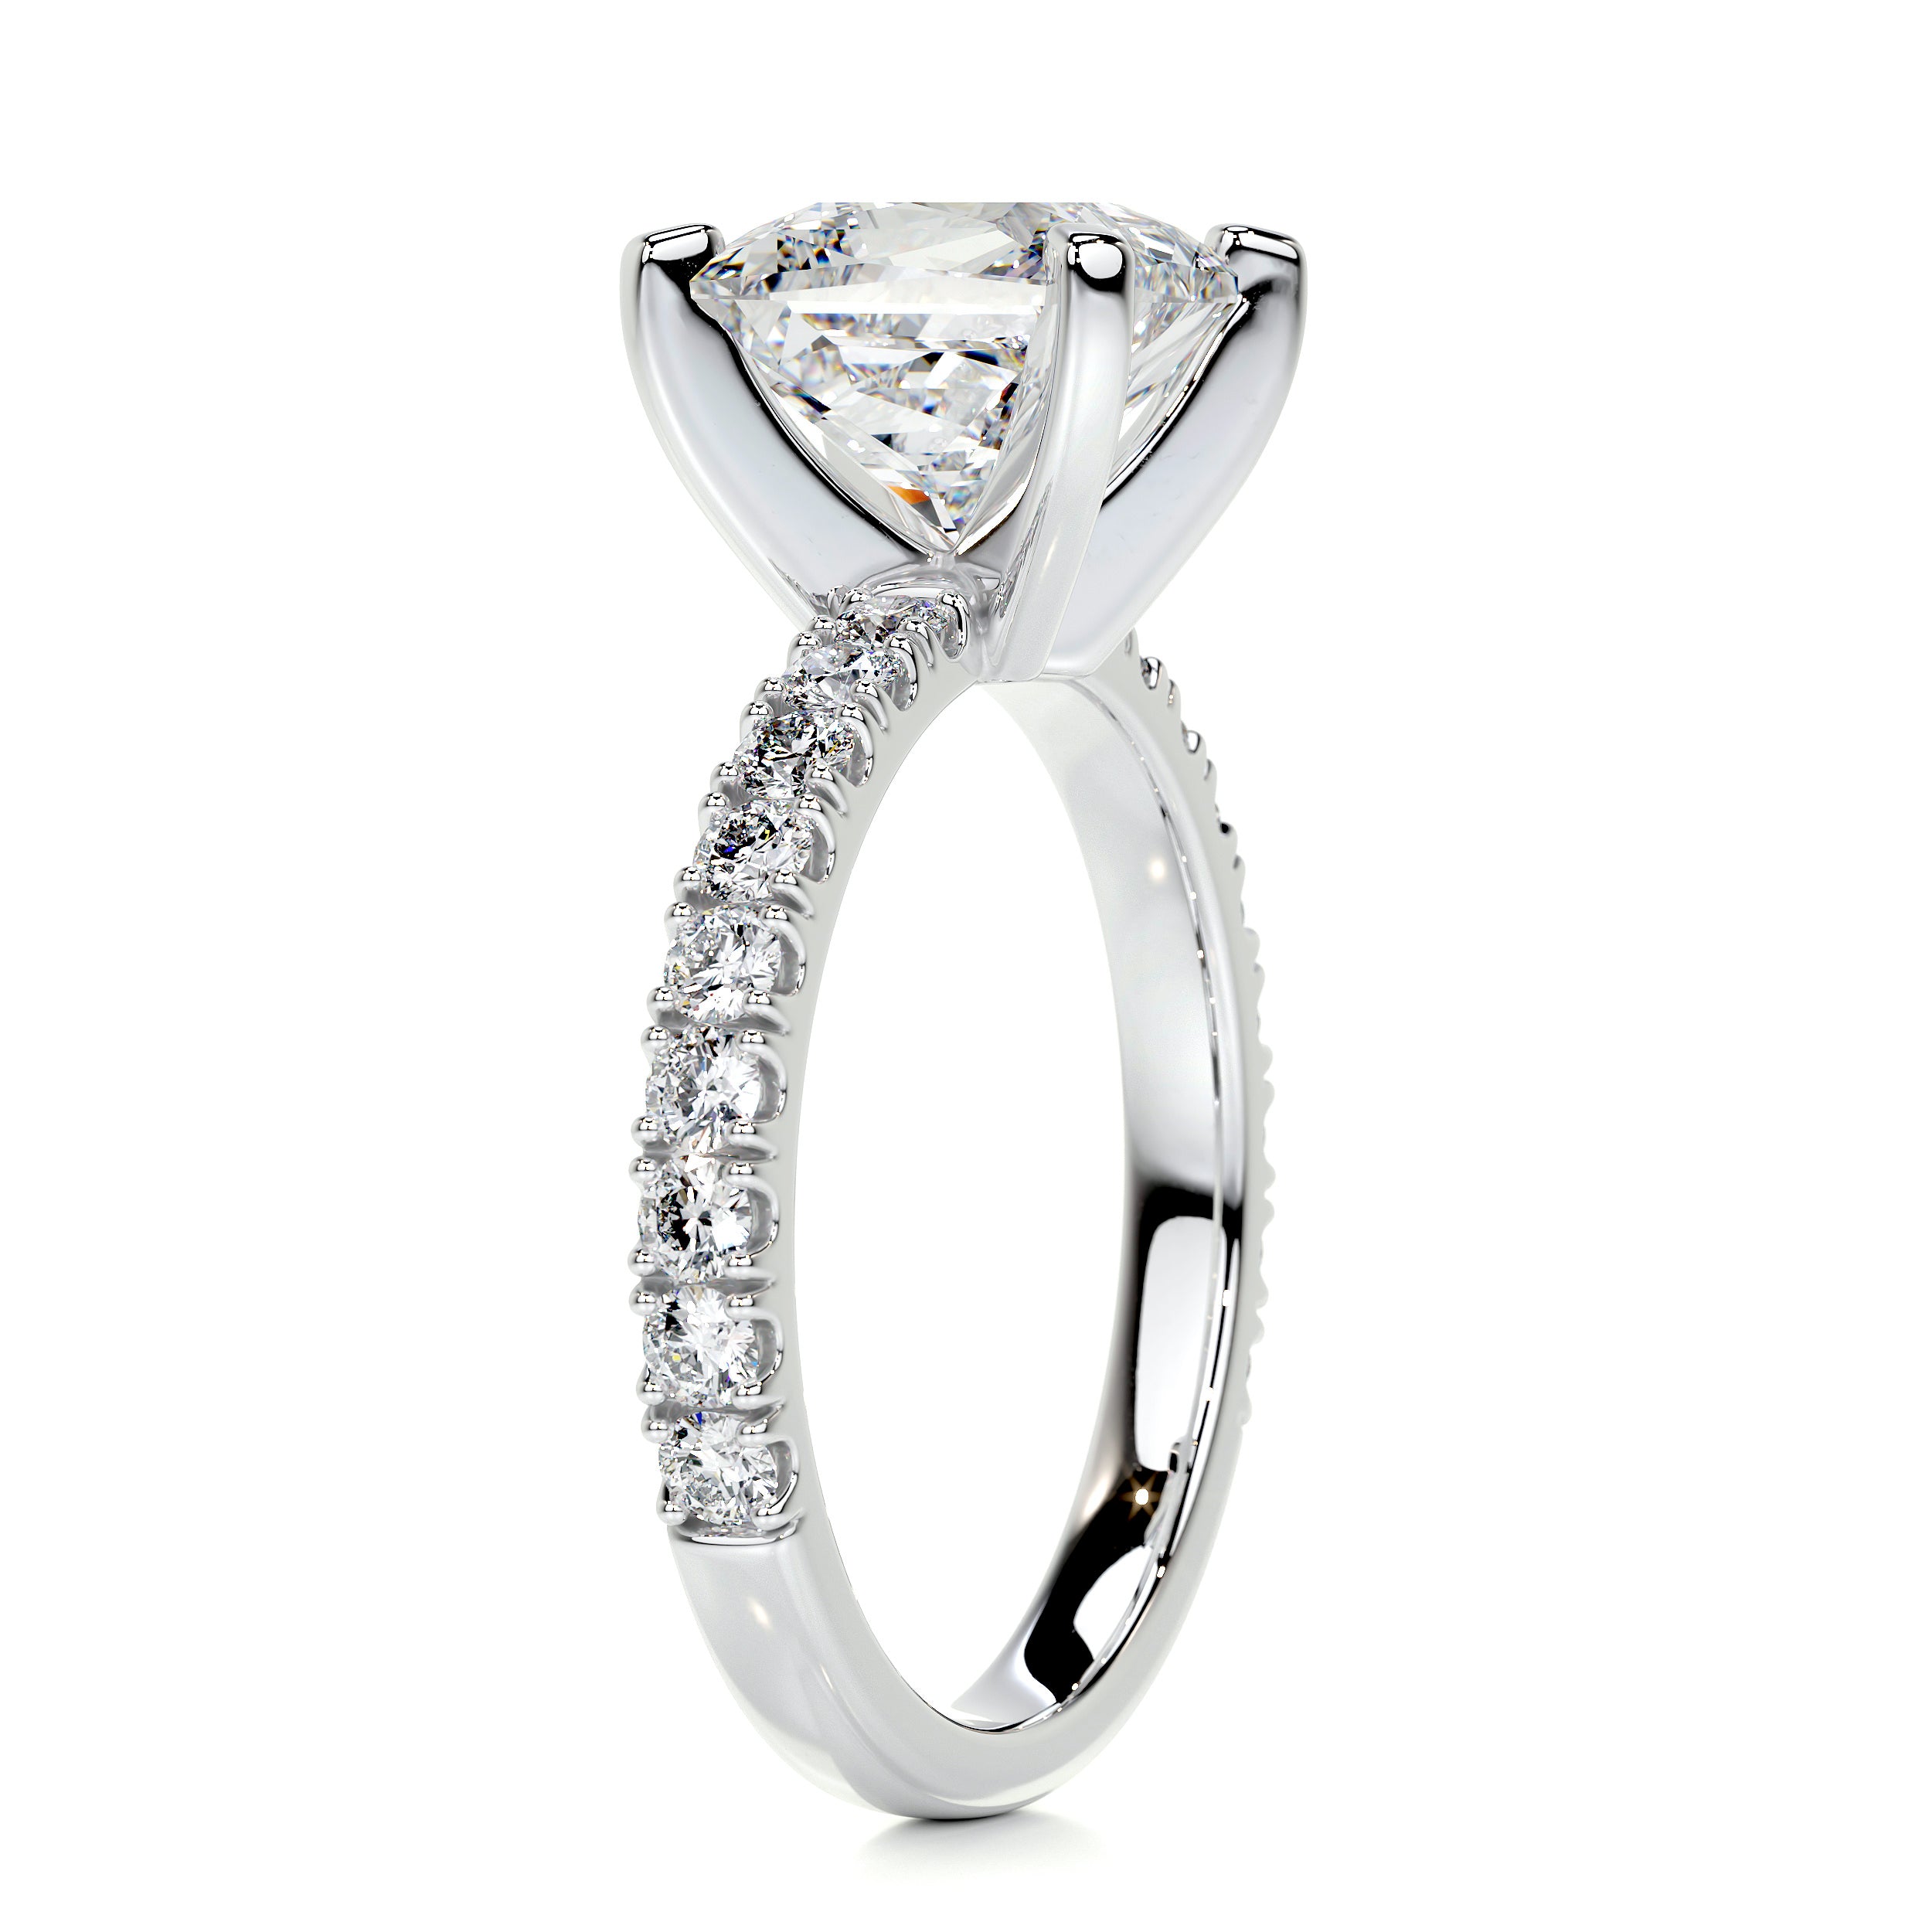 Blair Diamond Engagement Ring   (2.5 Carat) -14K White Gold